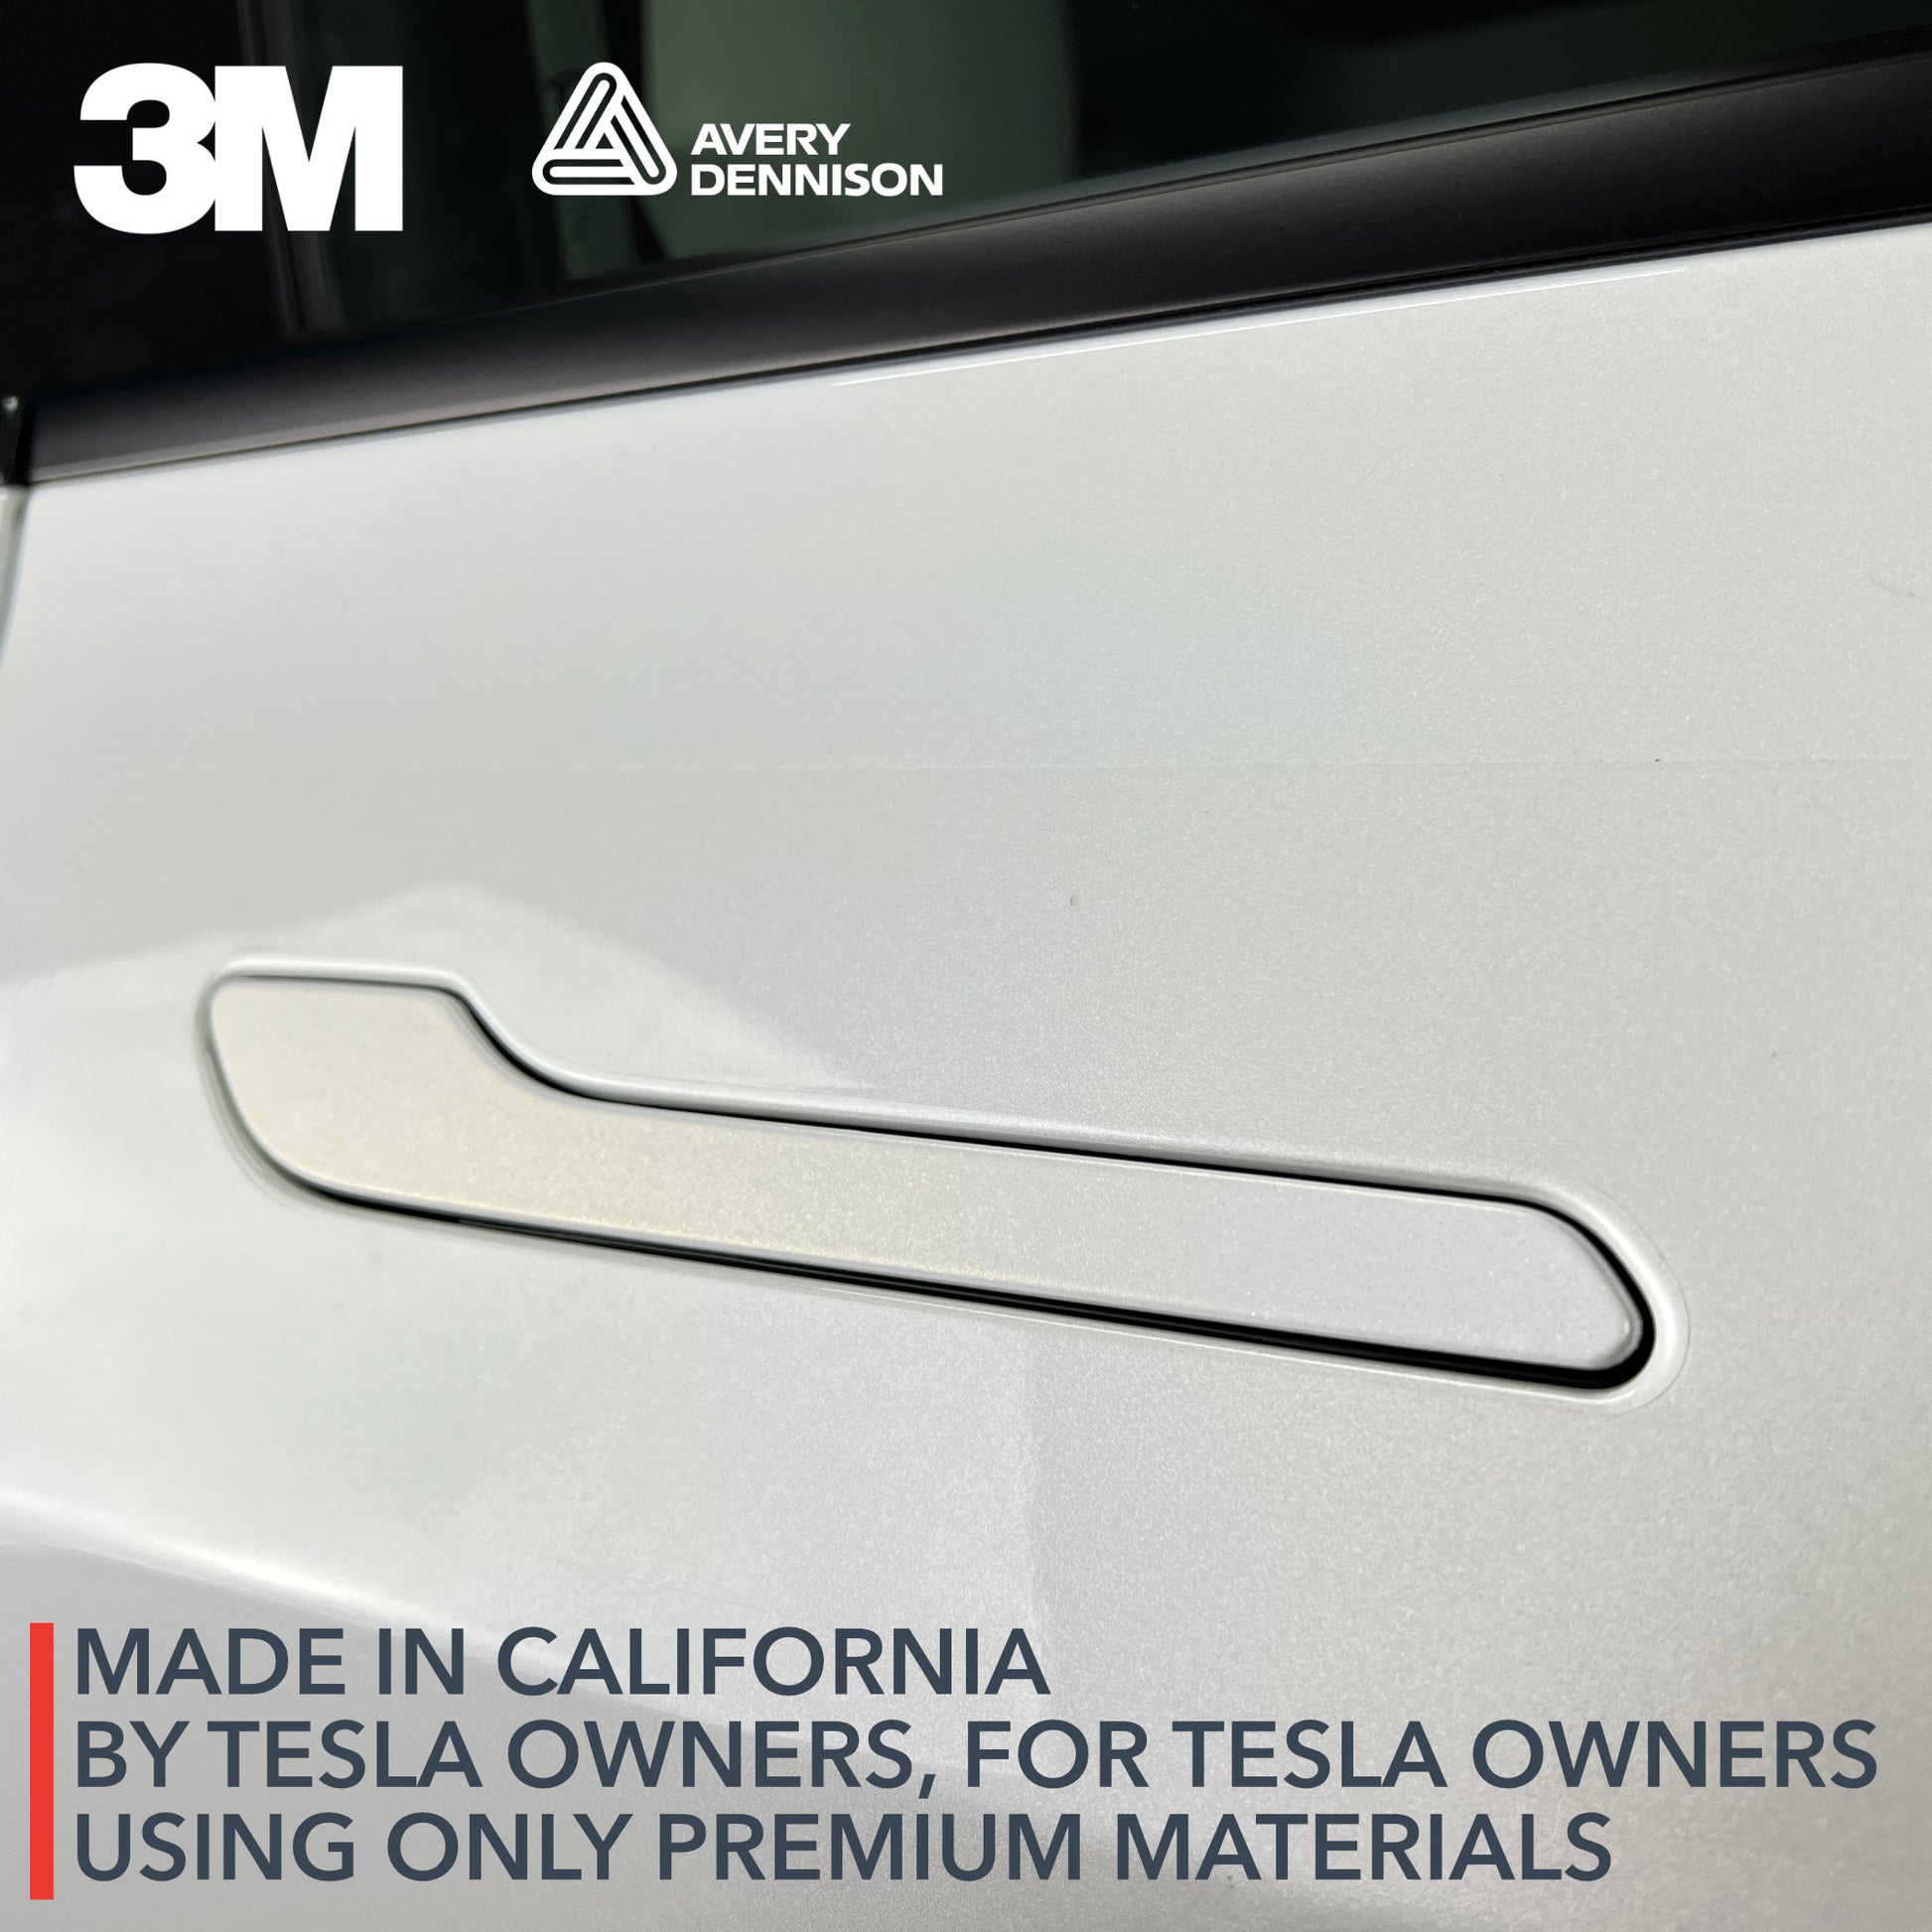 Door Handles Vinyl Cover for Tesla Model 3 / Model Y – TWRAPS